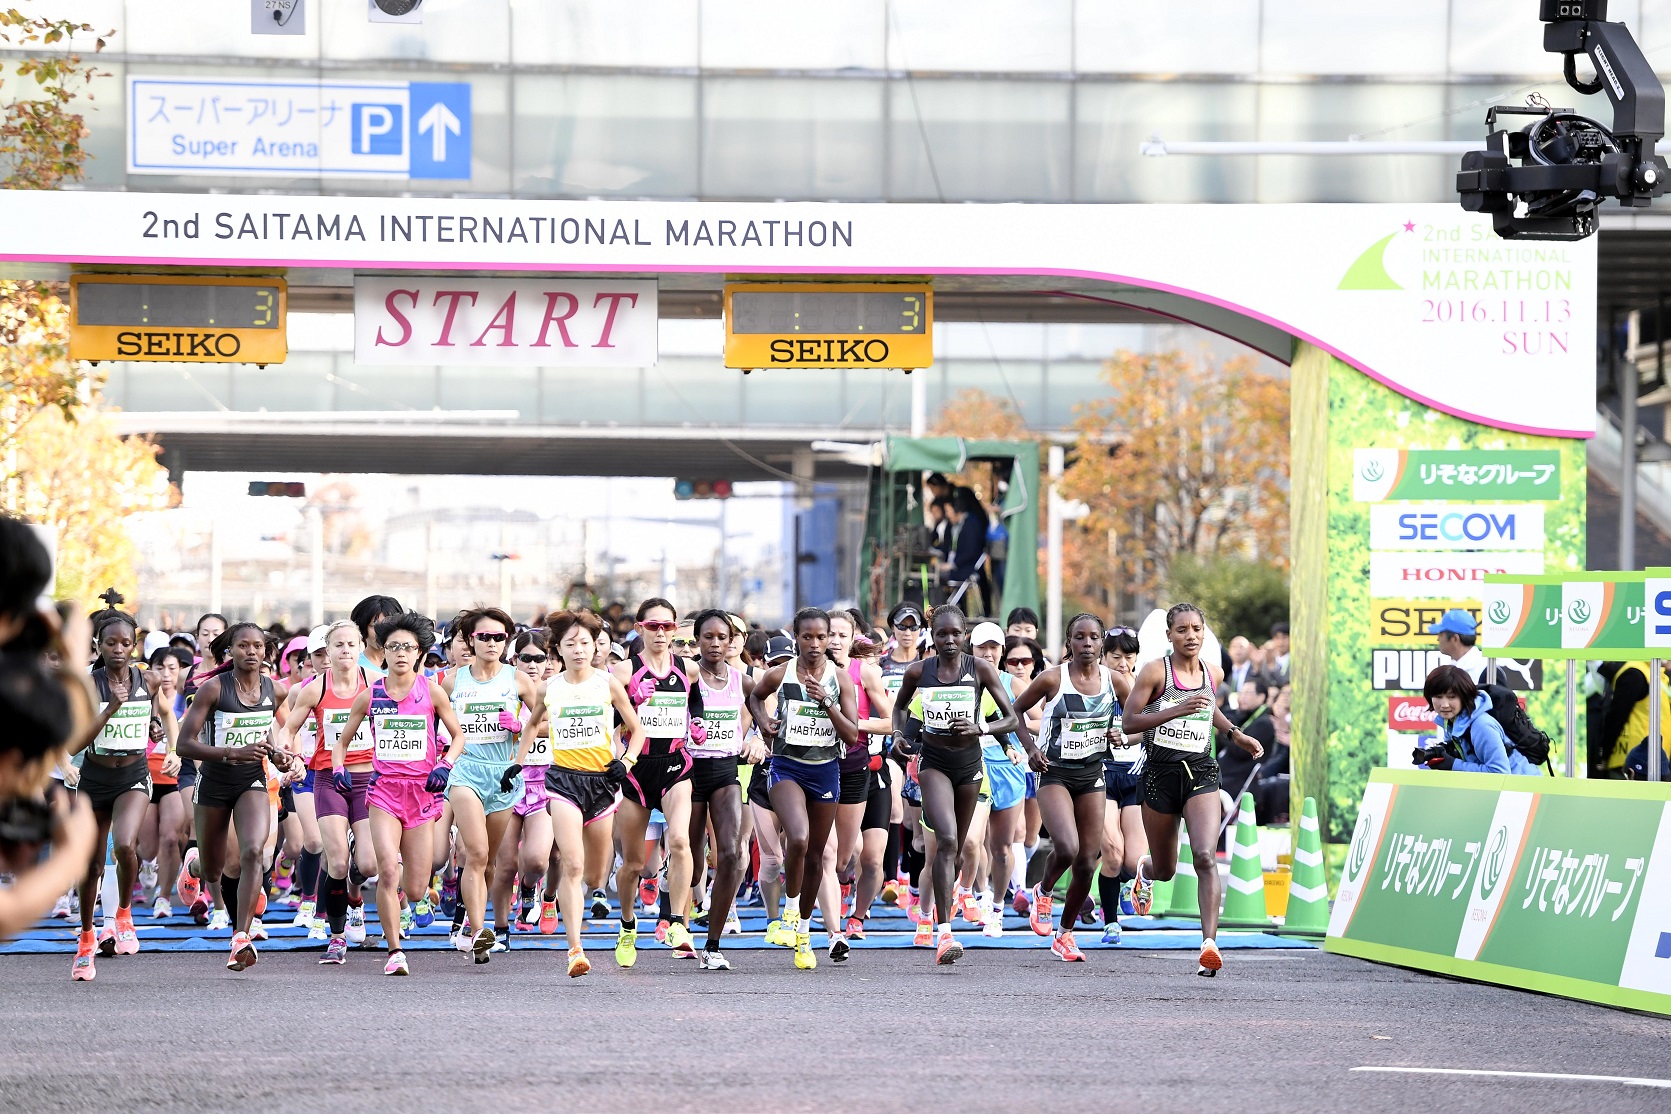 さいたま国際マラソン展望 Mgcファイナリスト誕生なるか 日本陸上競技連盟公式サイト